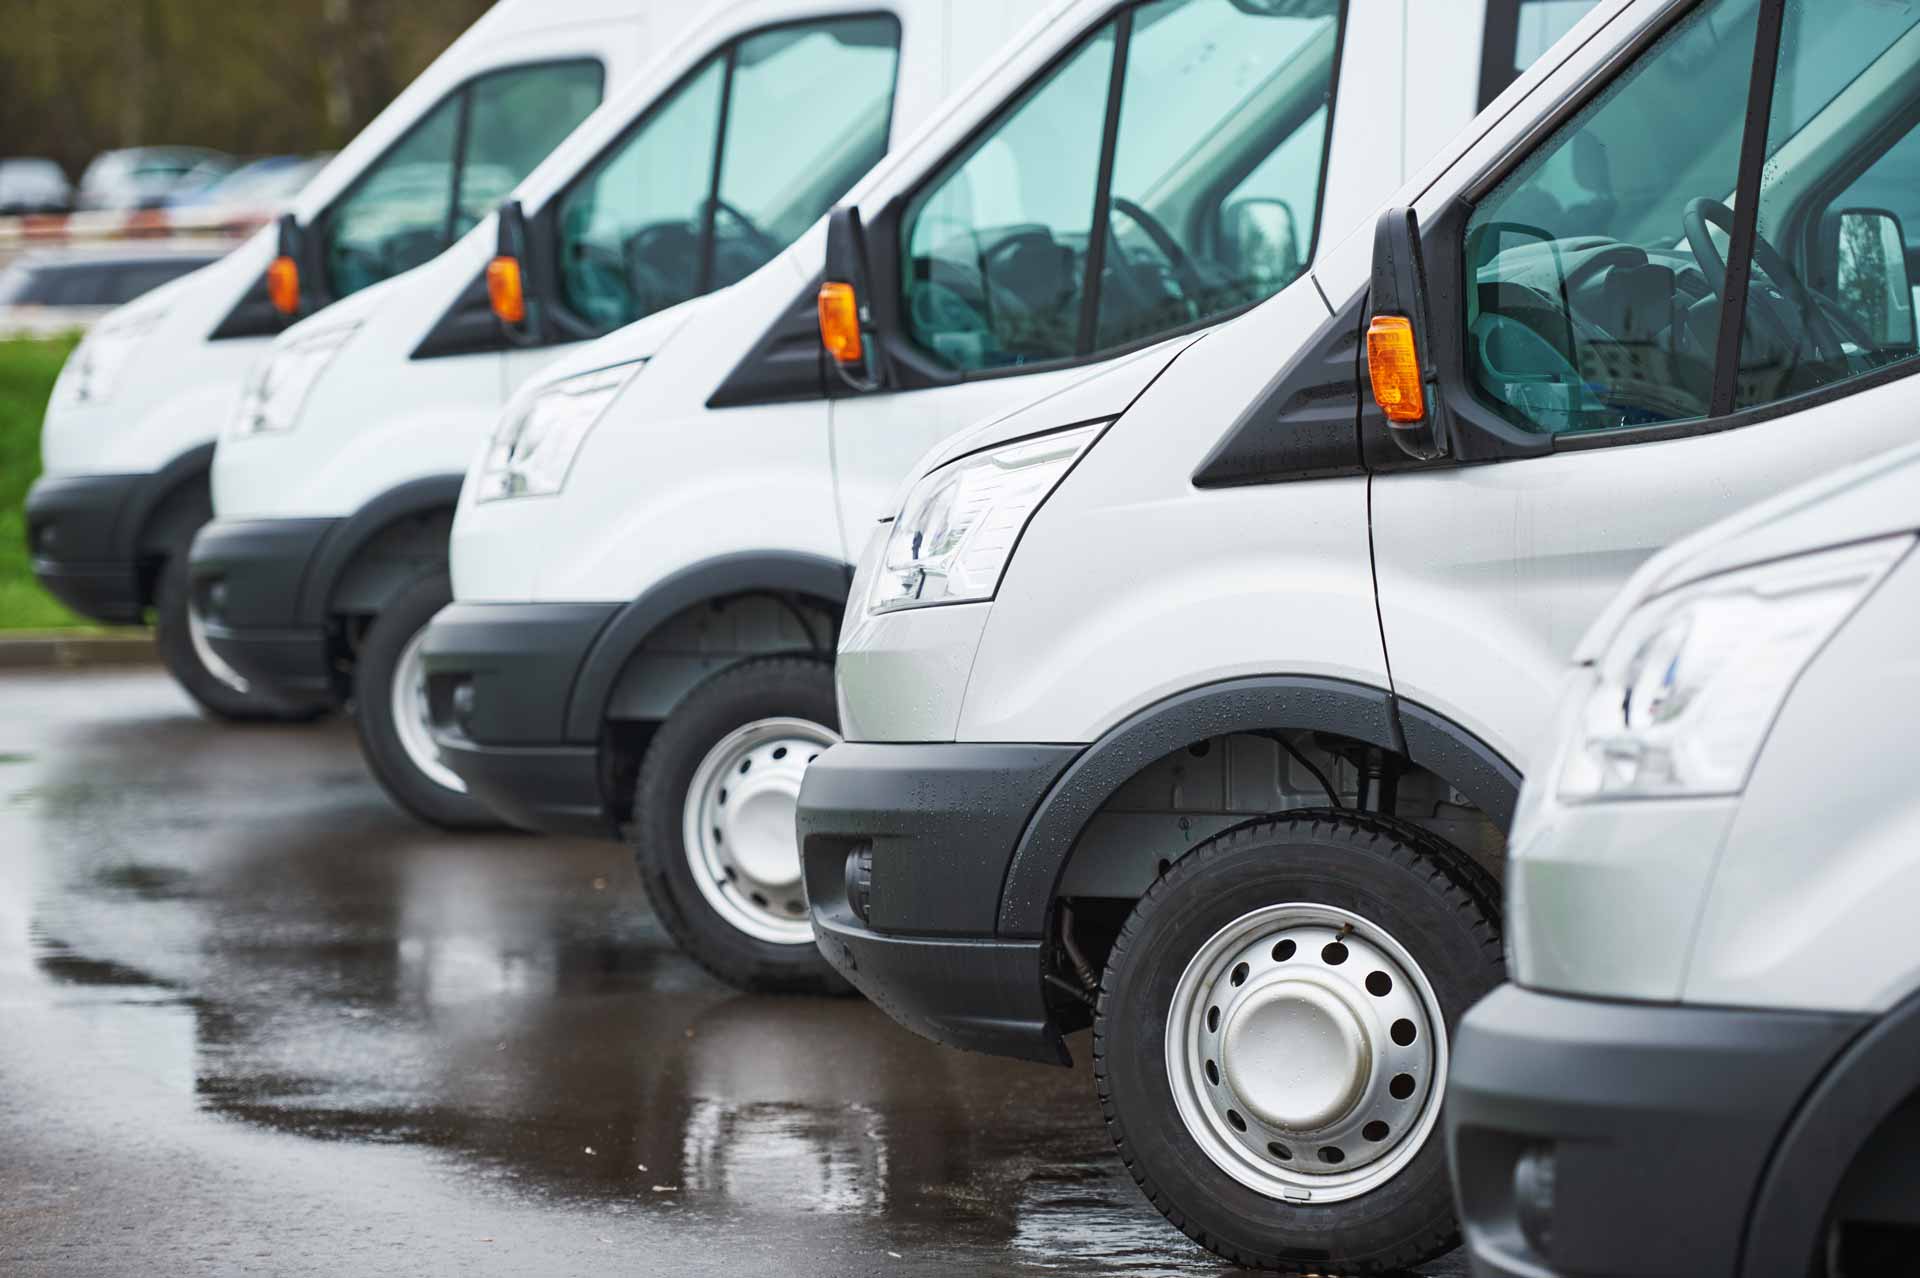 Fleet of identical white commercial vans